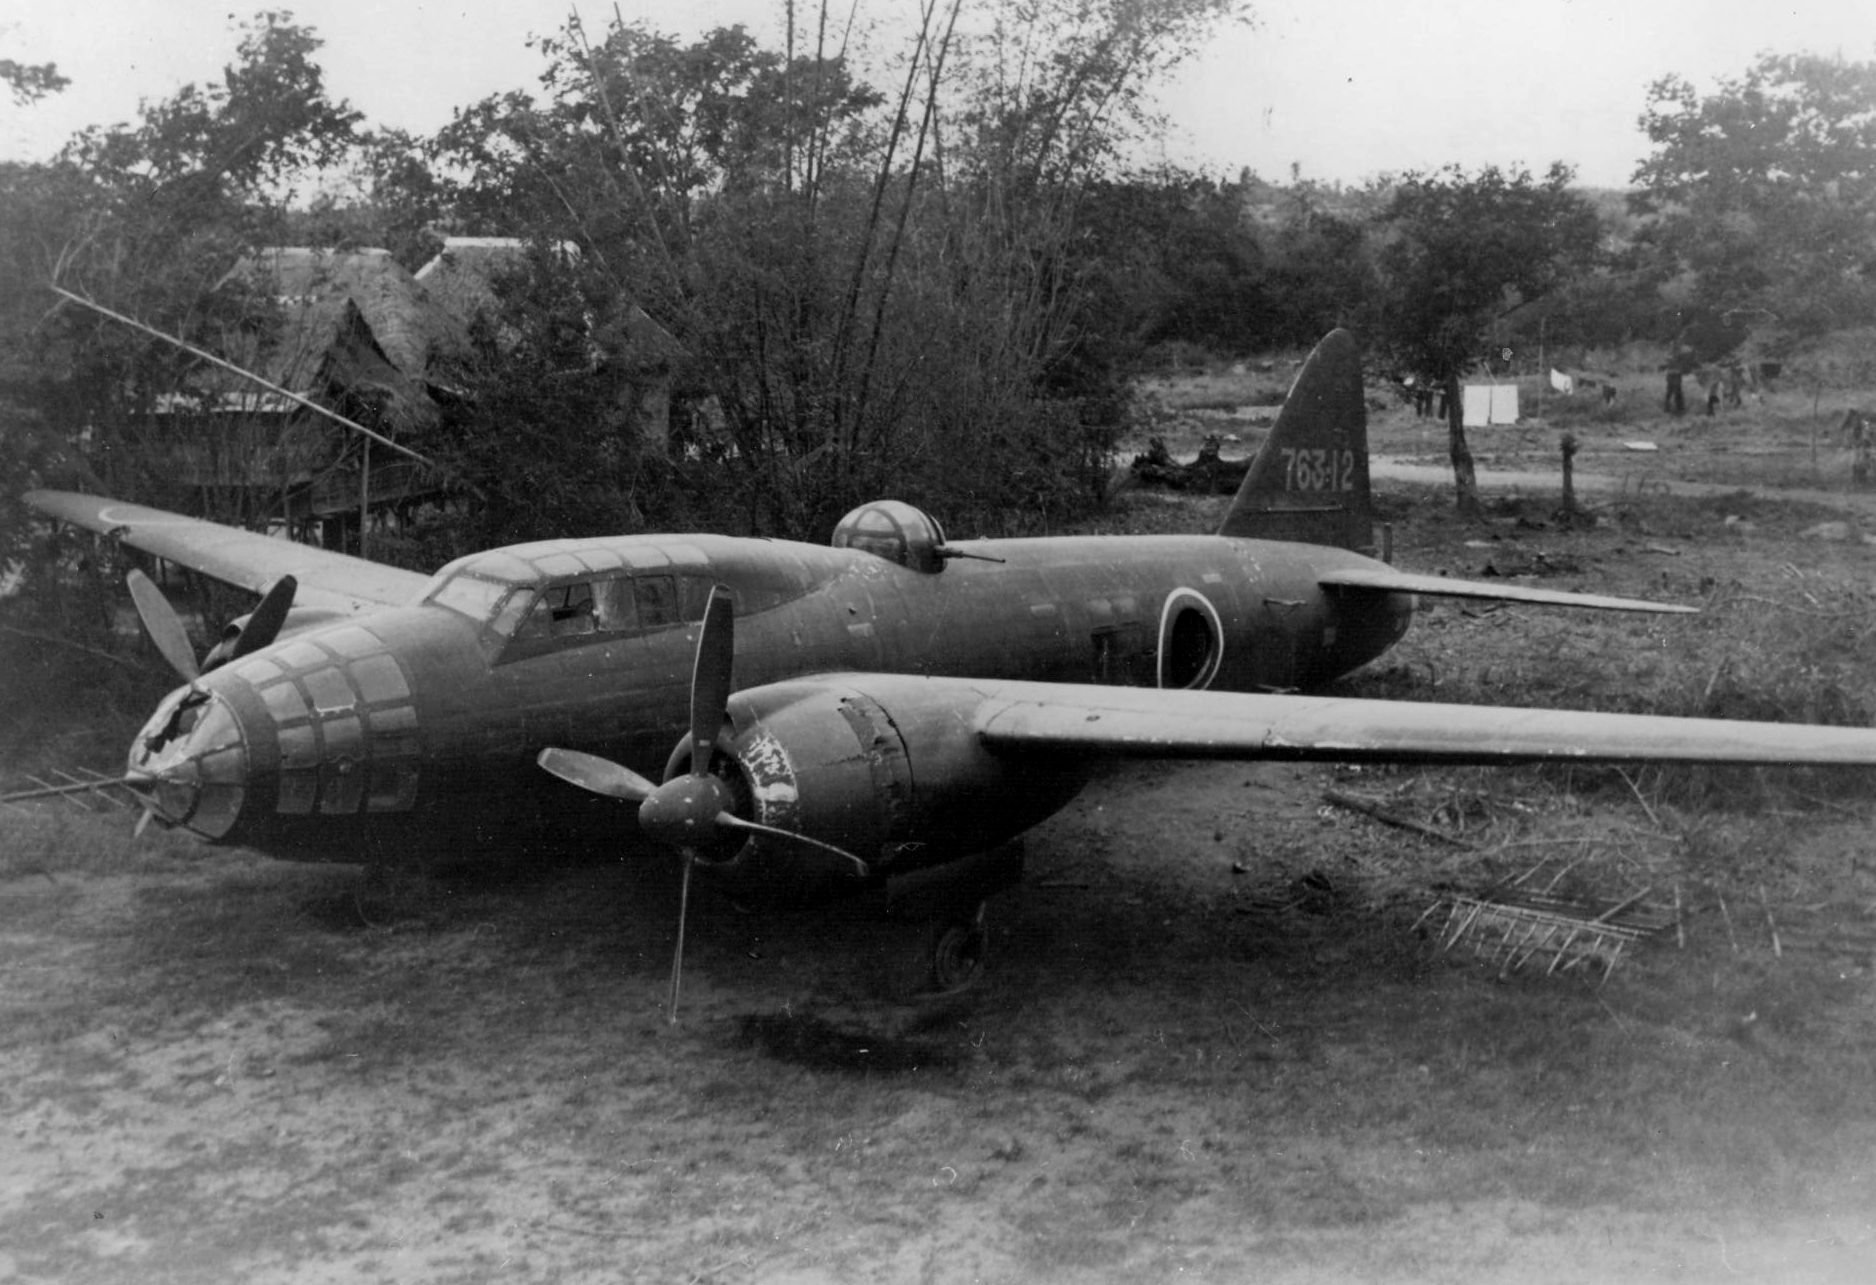 Mitsubishi_G4M_captured_on_ground_1945